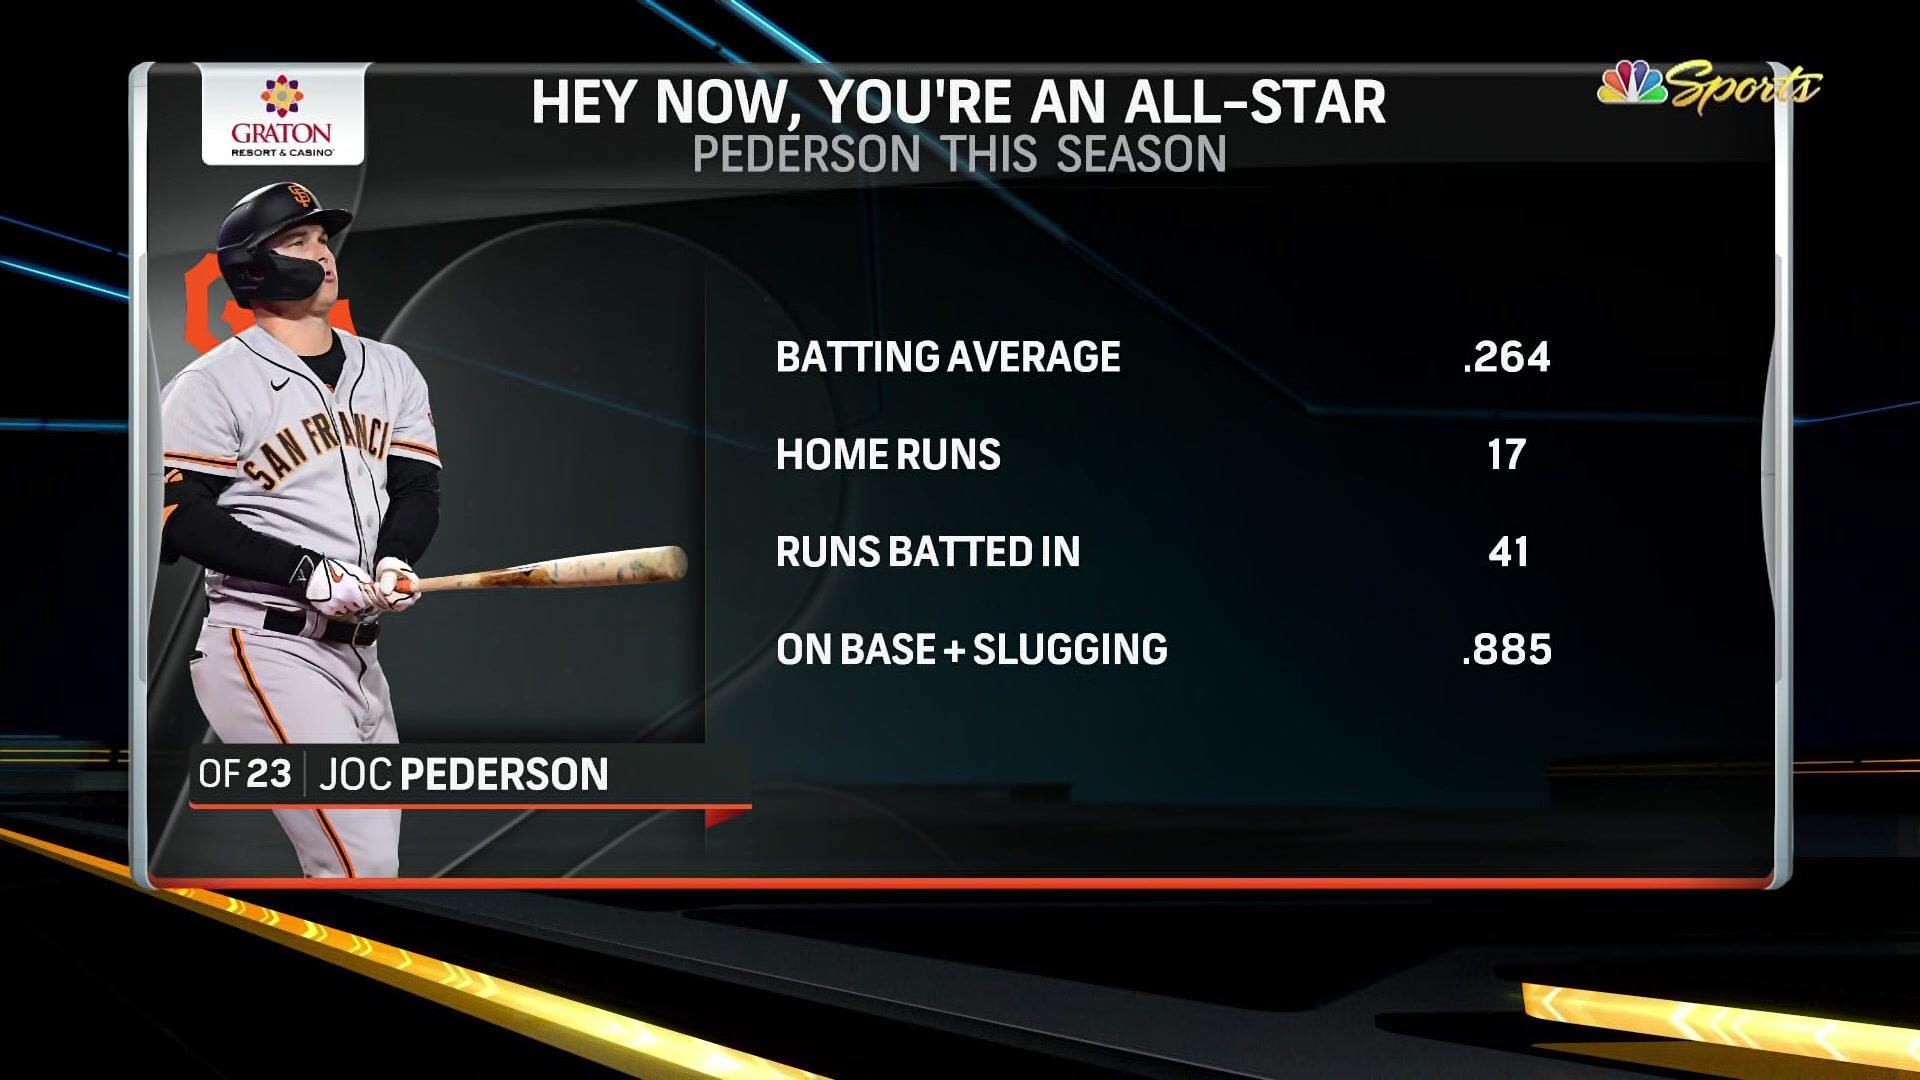 Giants' Joc Pederson named All-Star starter